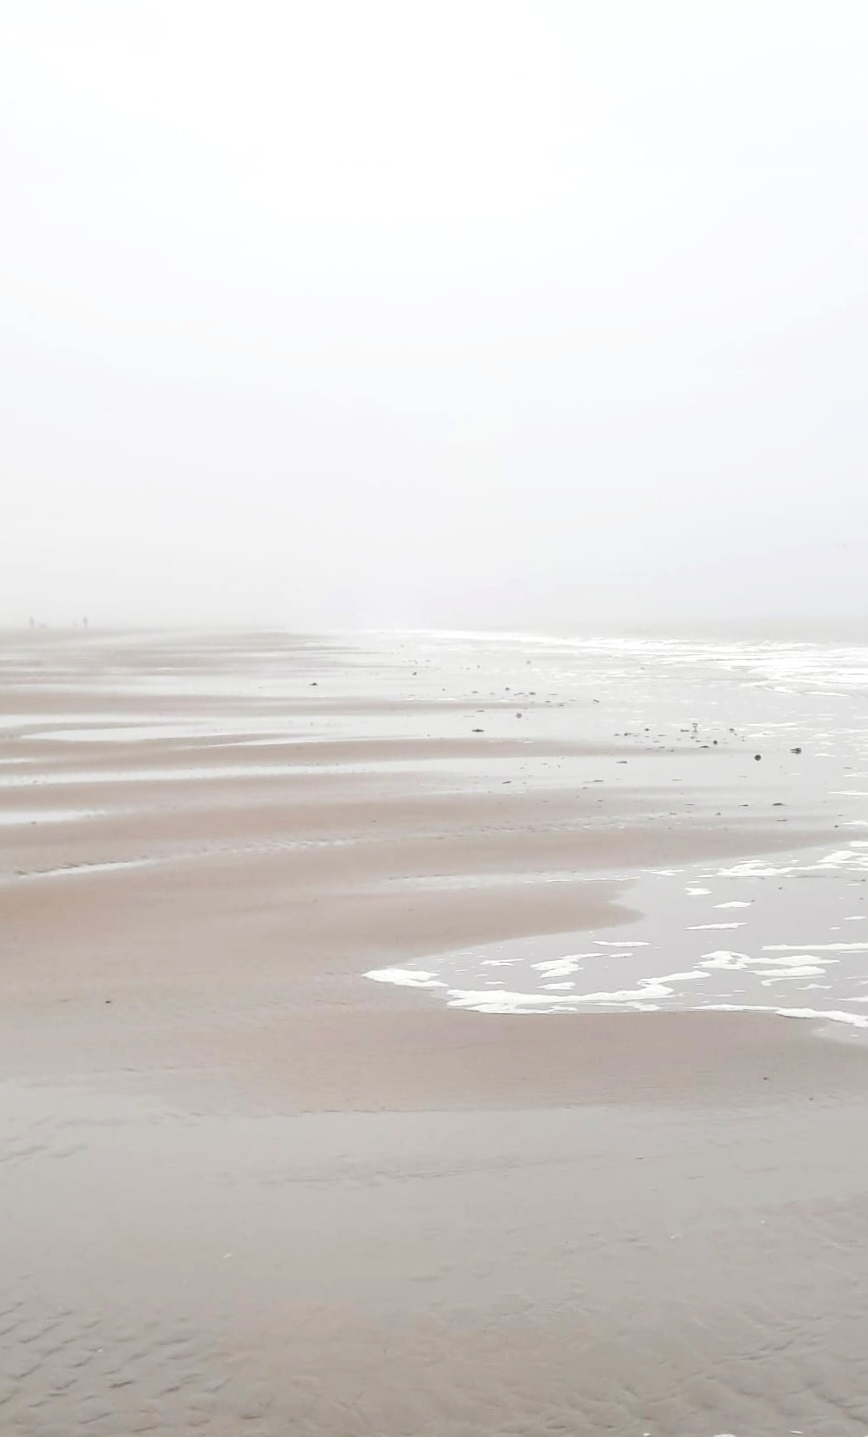 Derweil in Holland am Strand! Wie schön ist denn diese Atmosphäre im Nebel?